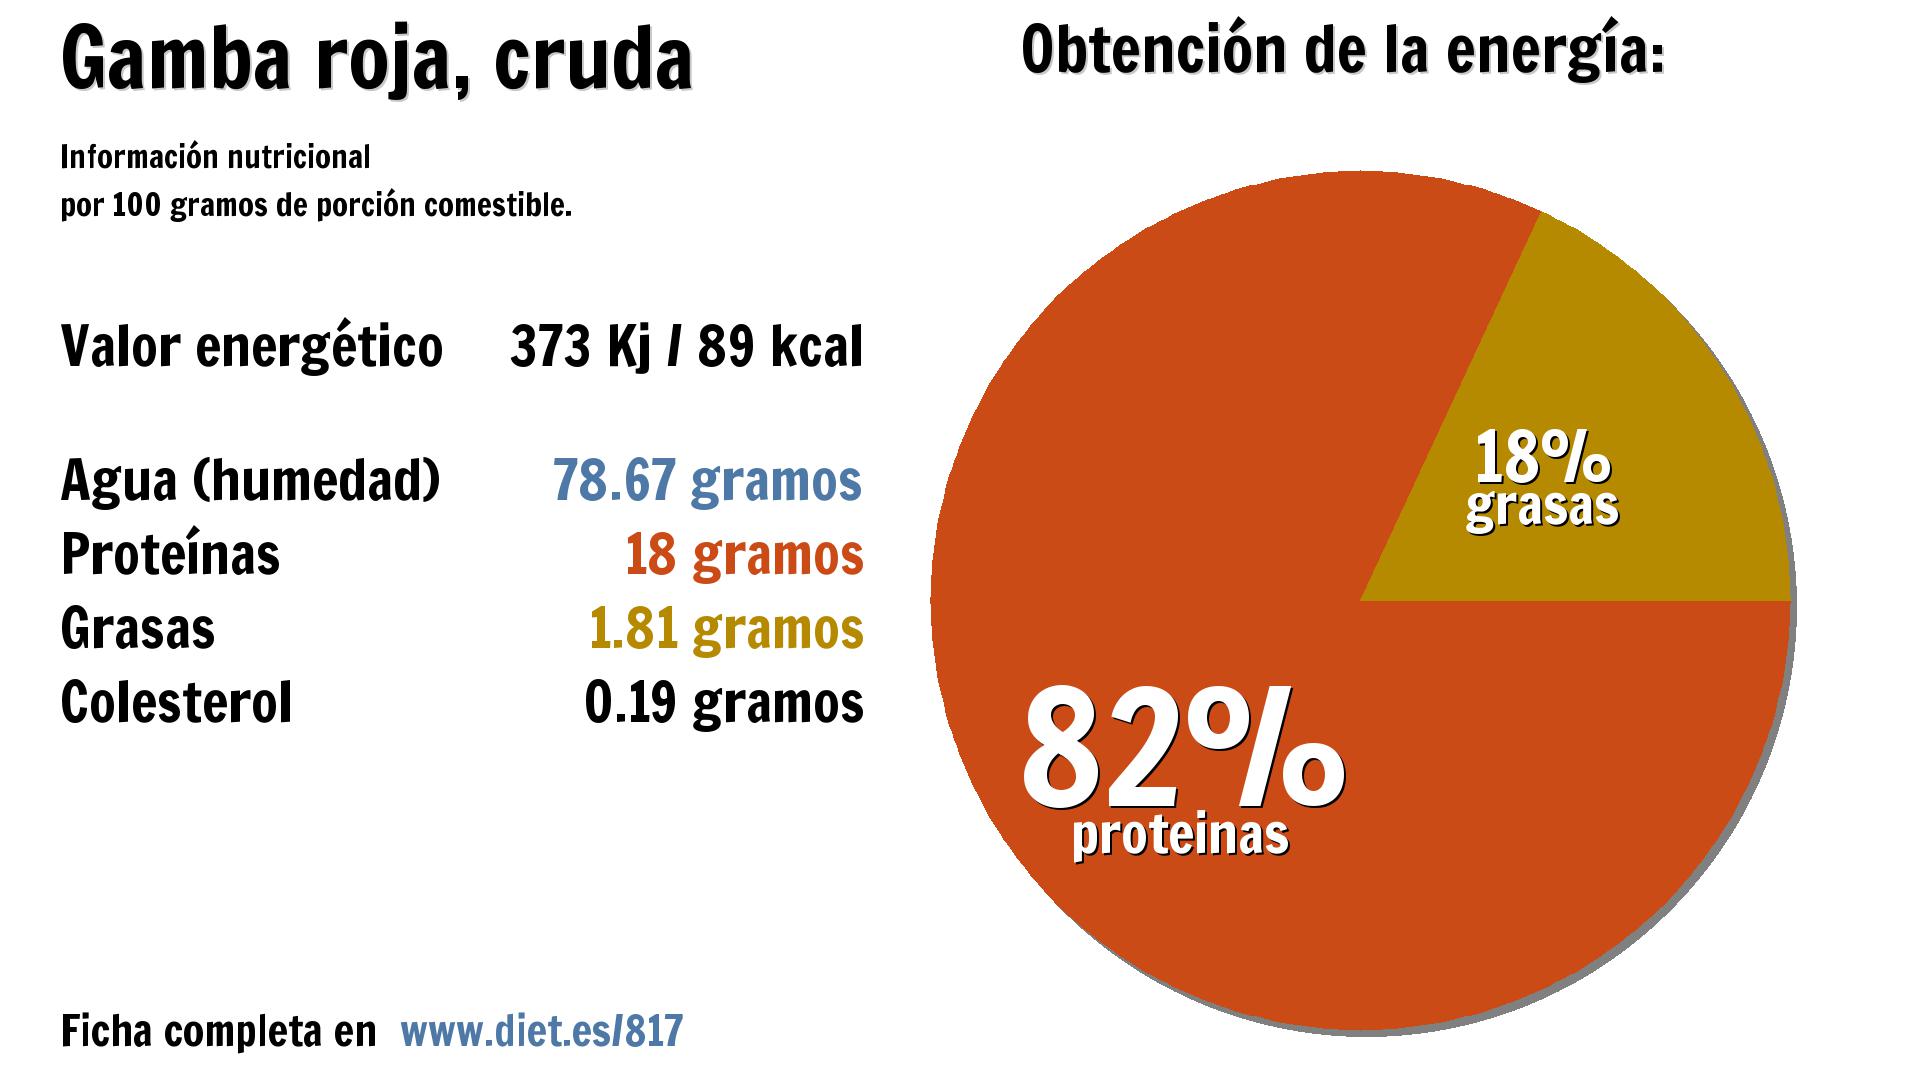 Gamba roja, cruda: energía 373 Kj, agua 79 g., proteínas 18 g. y grasas 2 g.